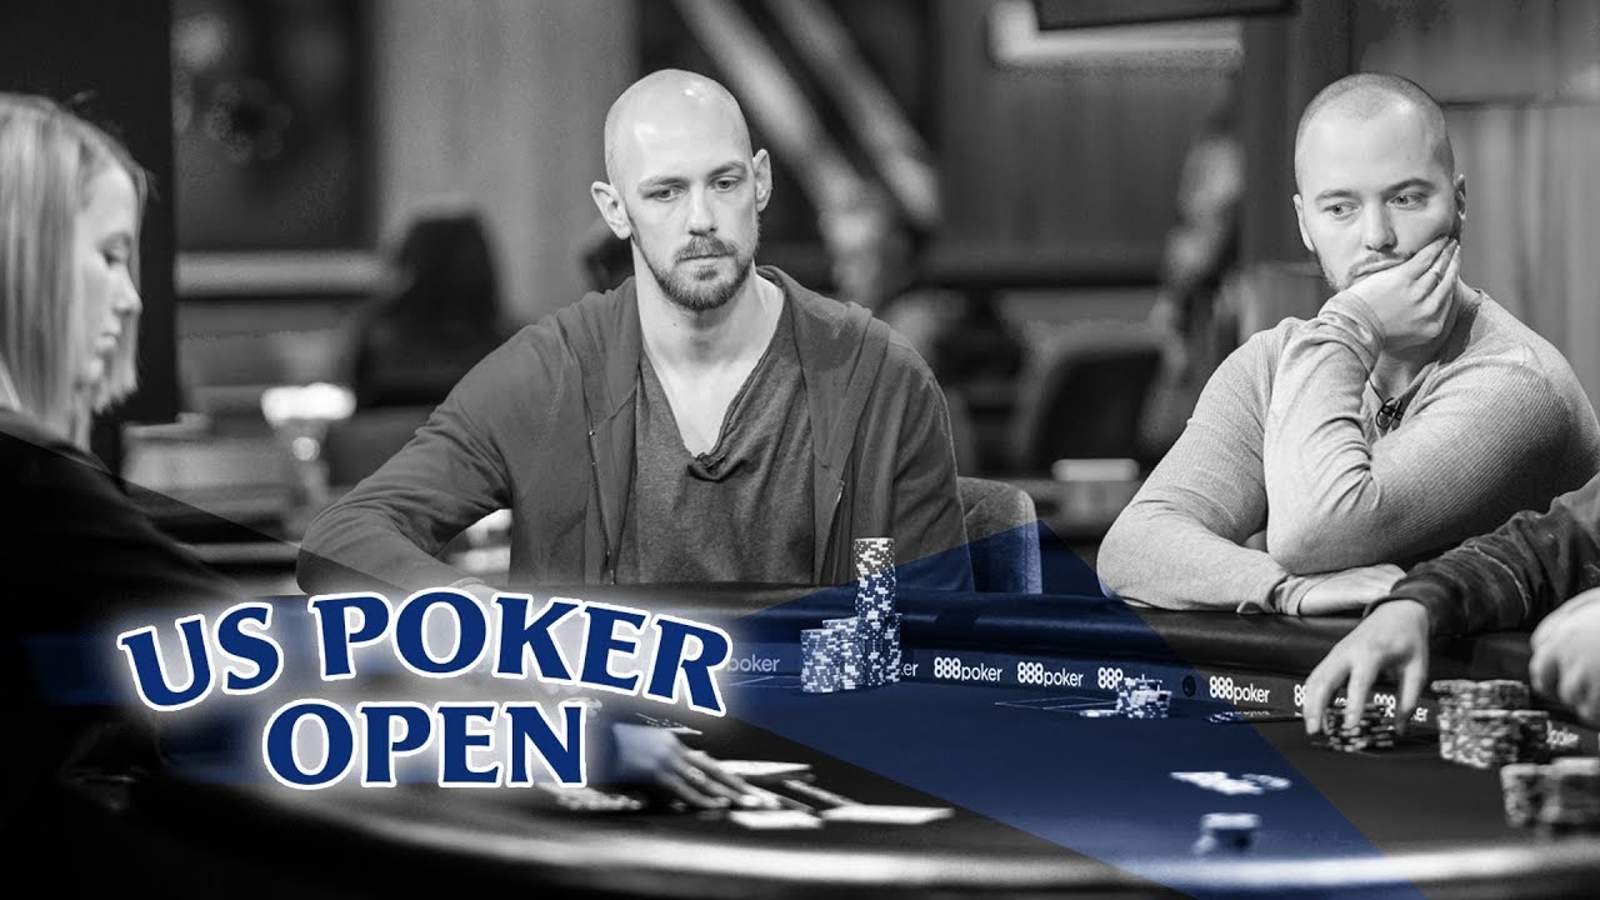 Stephen Chidwick's 2019 U.S. Poker Open Cooler Against Sean Winter